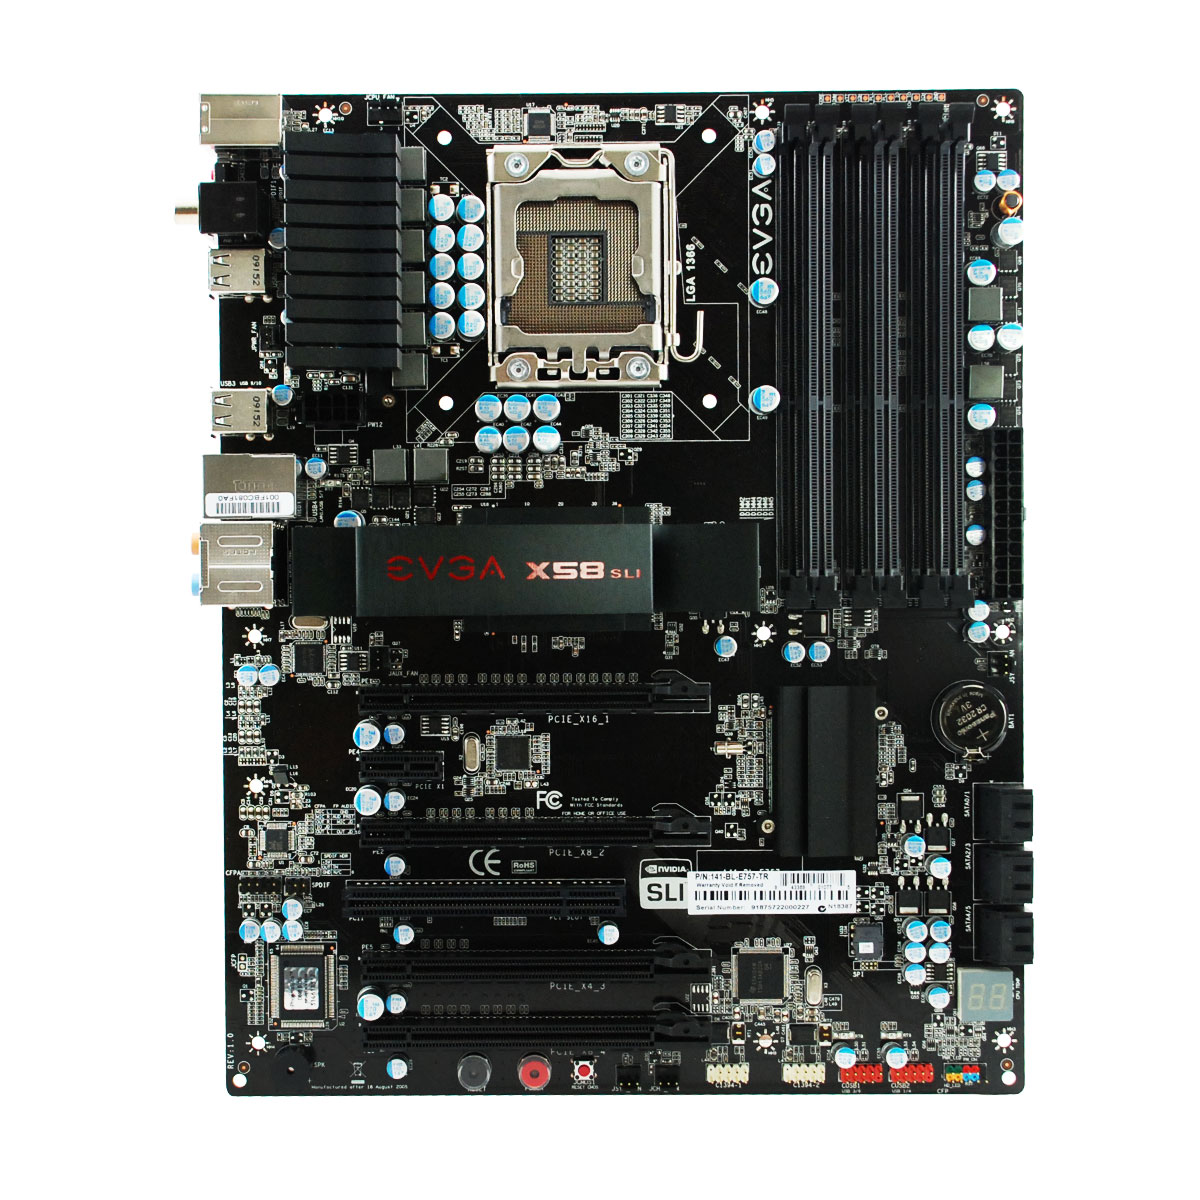 Immagine pubblicata in relazione al seguente contenuto: EVGA lancia la motherboard X58 SLI LE per cpu Core i7 | Nome immagine: news10583_3.jpg